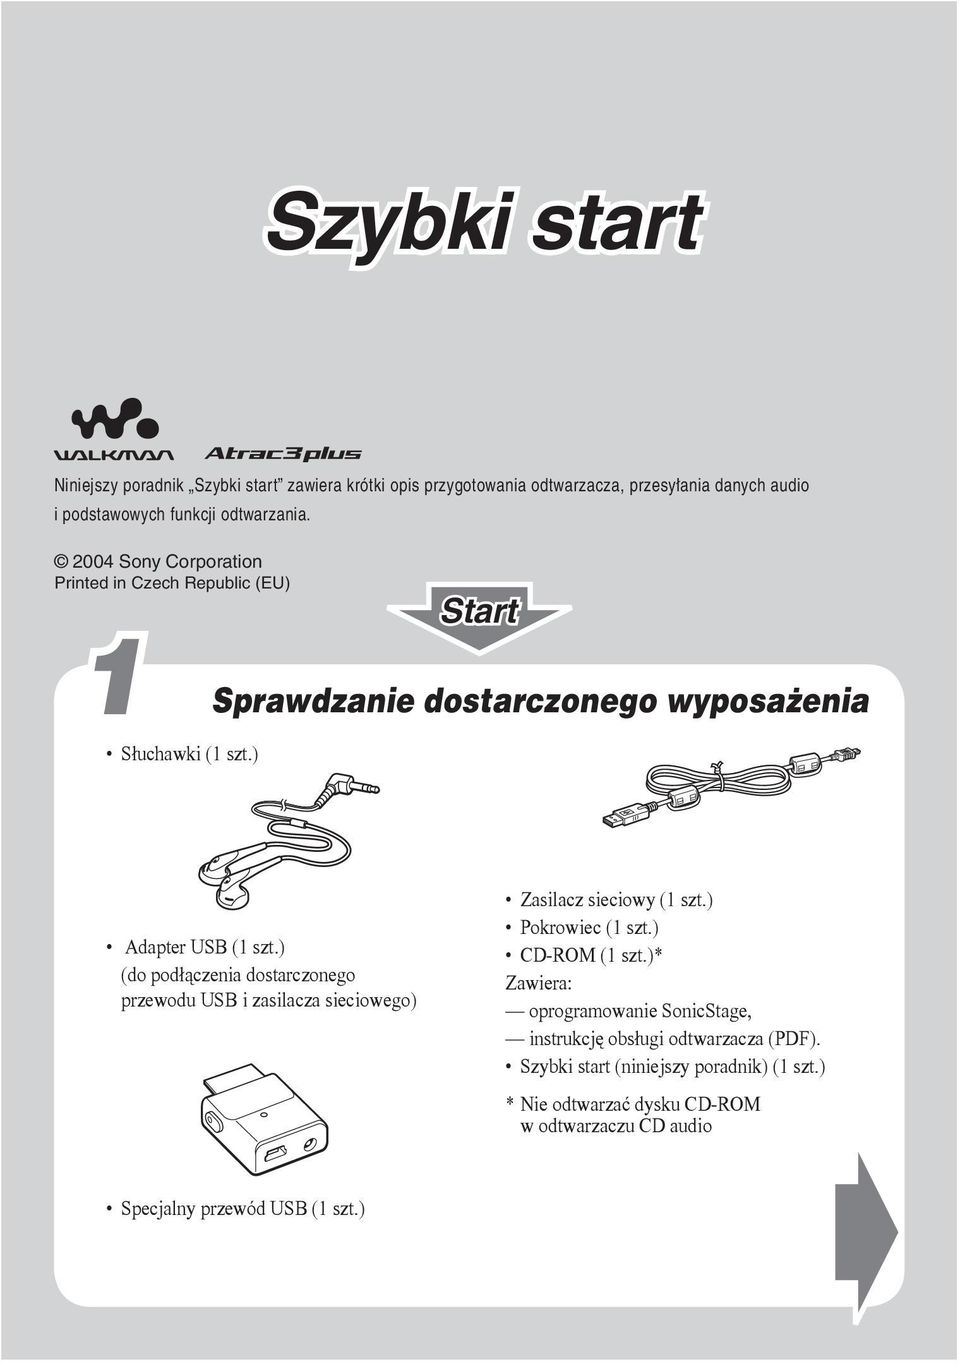 ) (do podłączenia dostarczonego przewodu USB i zasilacza sieciowego) Zasilacz sieciowy (1 szt.) Pokrowiec (1 szt.) CD-ROM (1 szt.